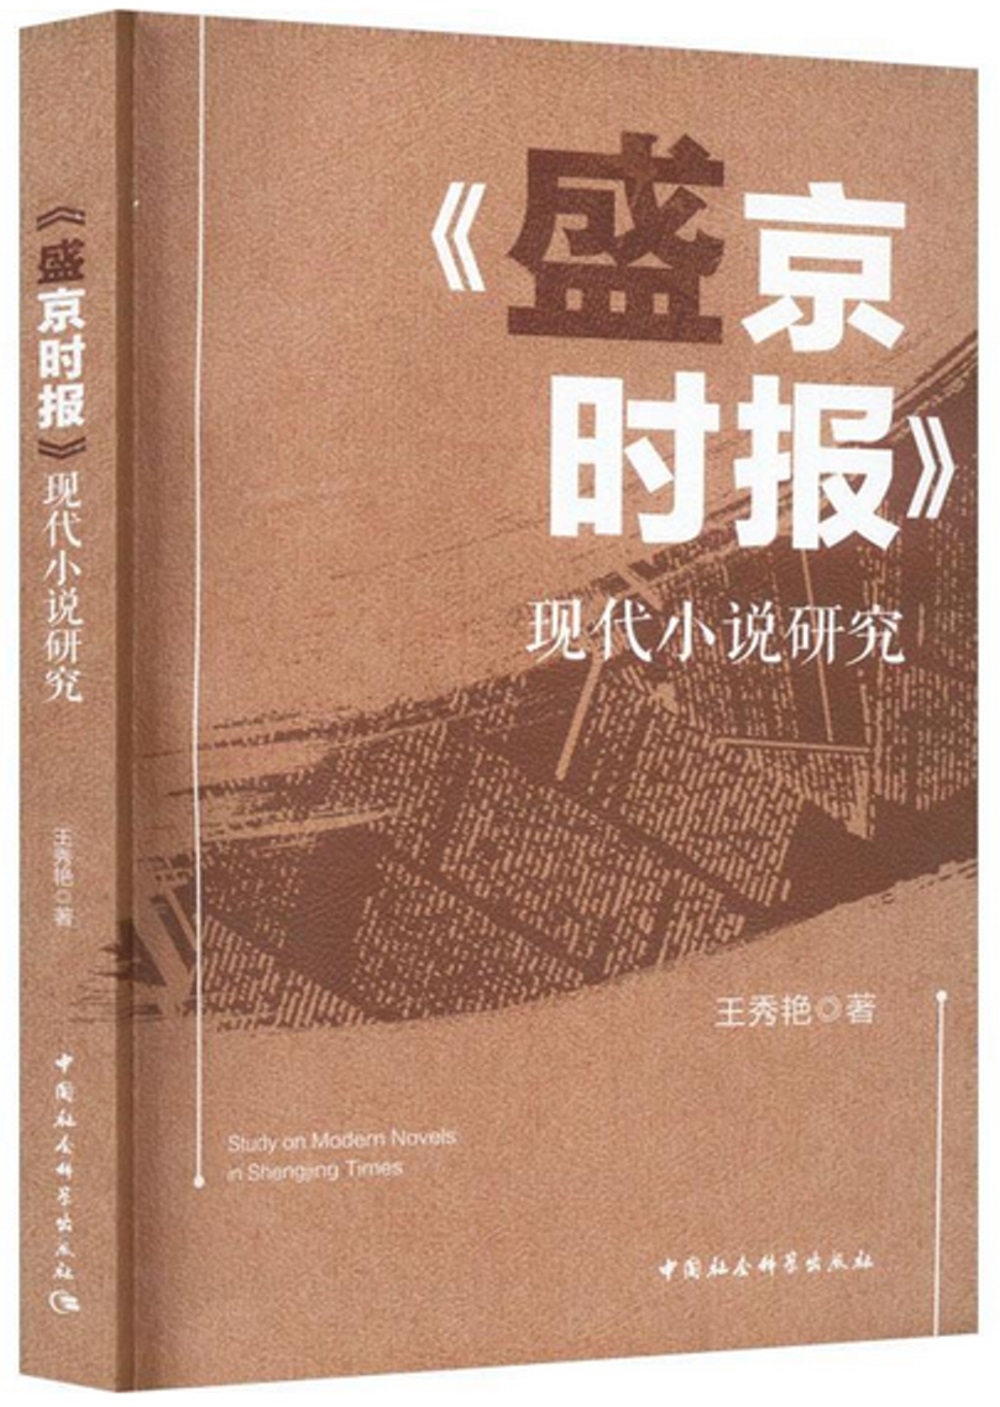 《盛京時報》現代小說研究